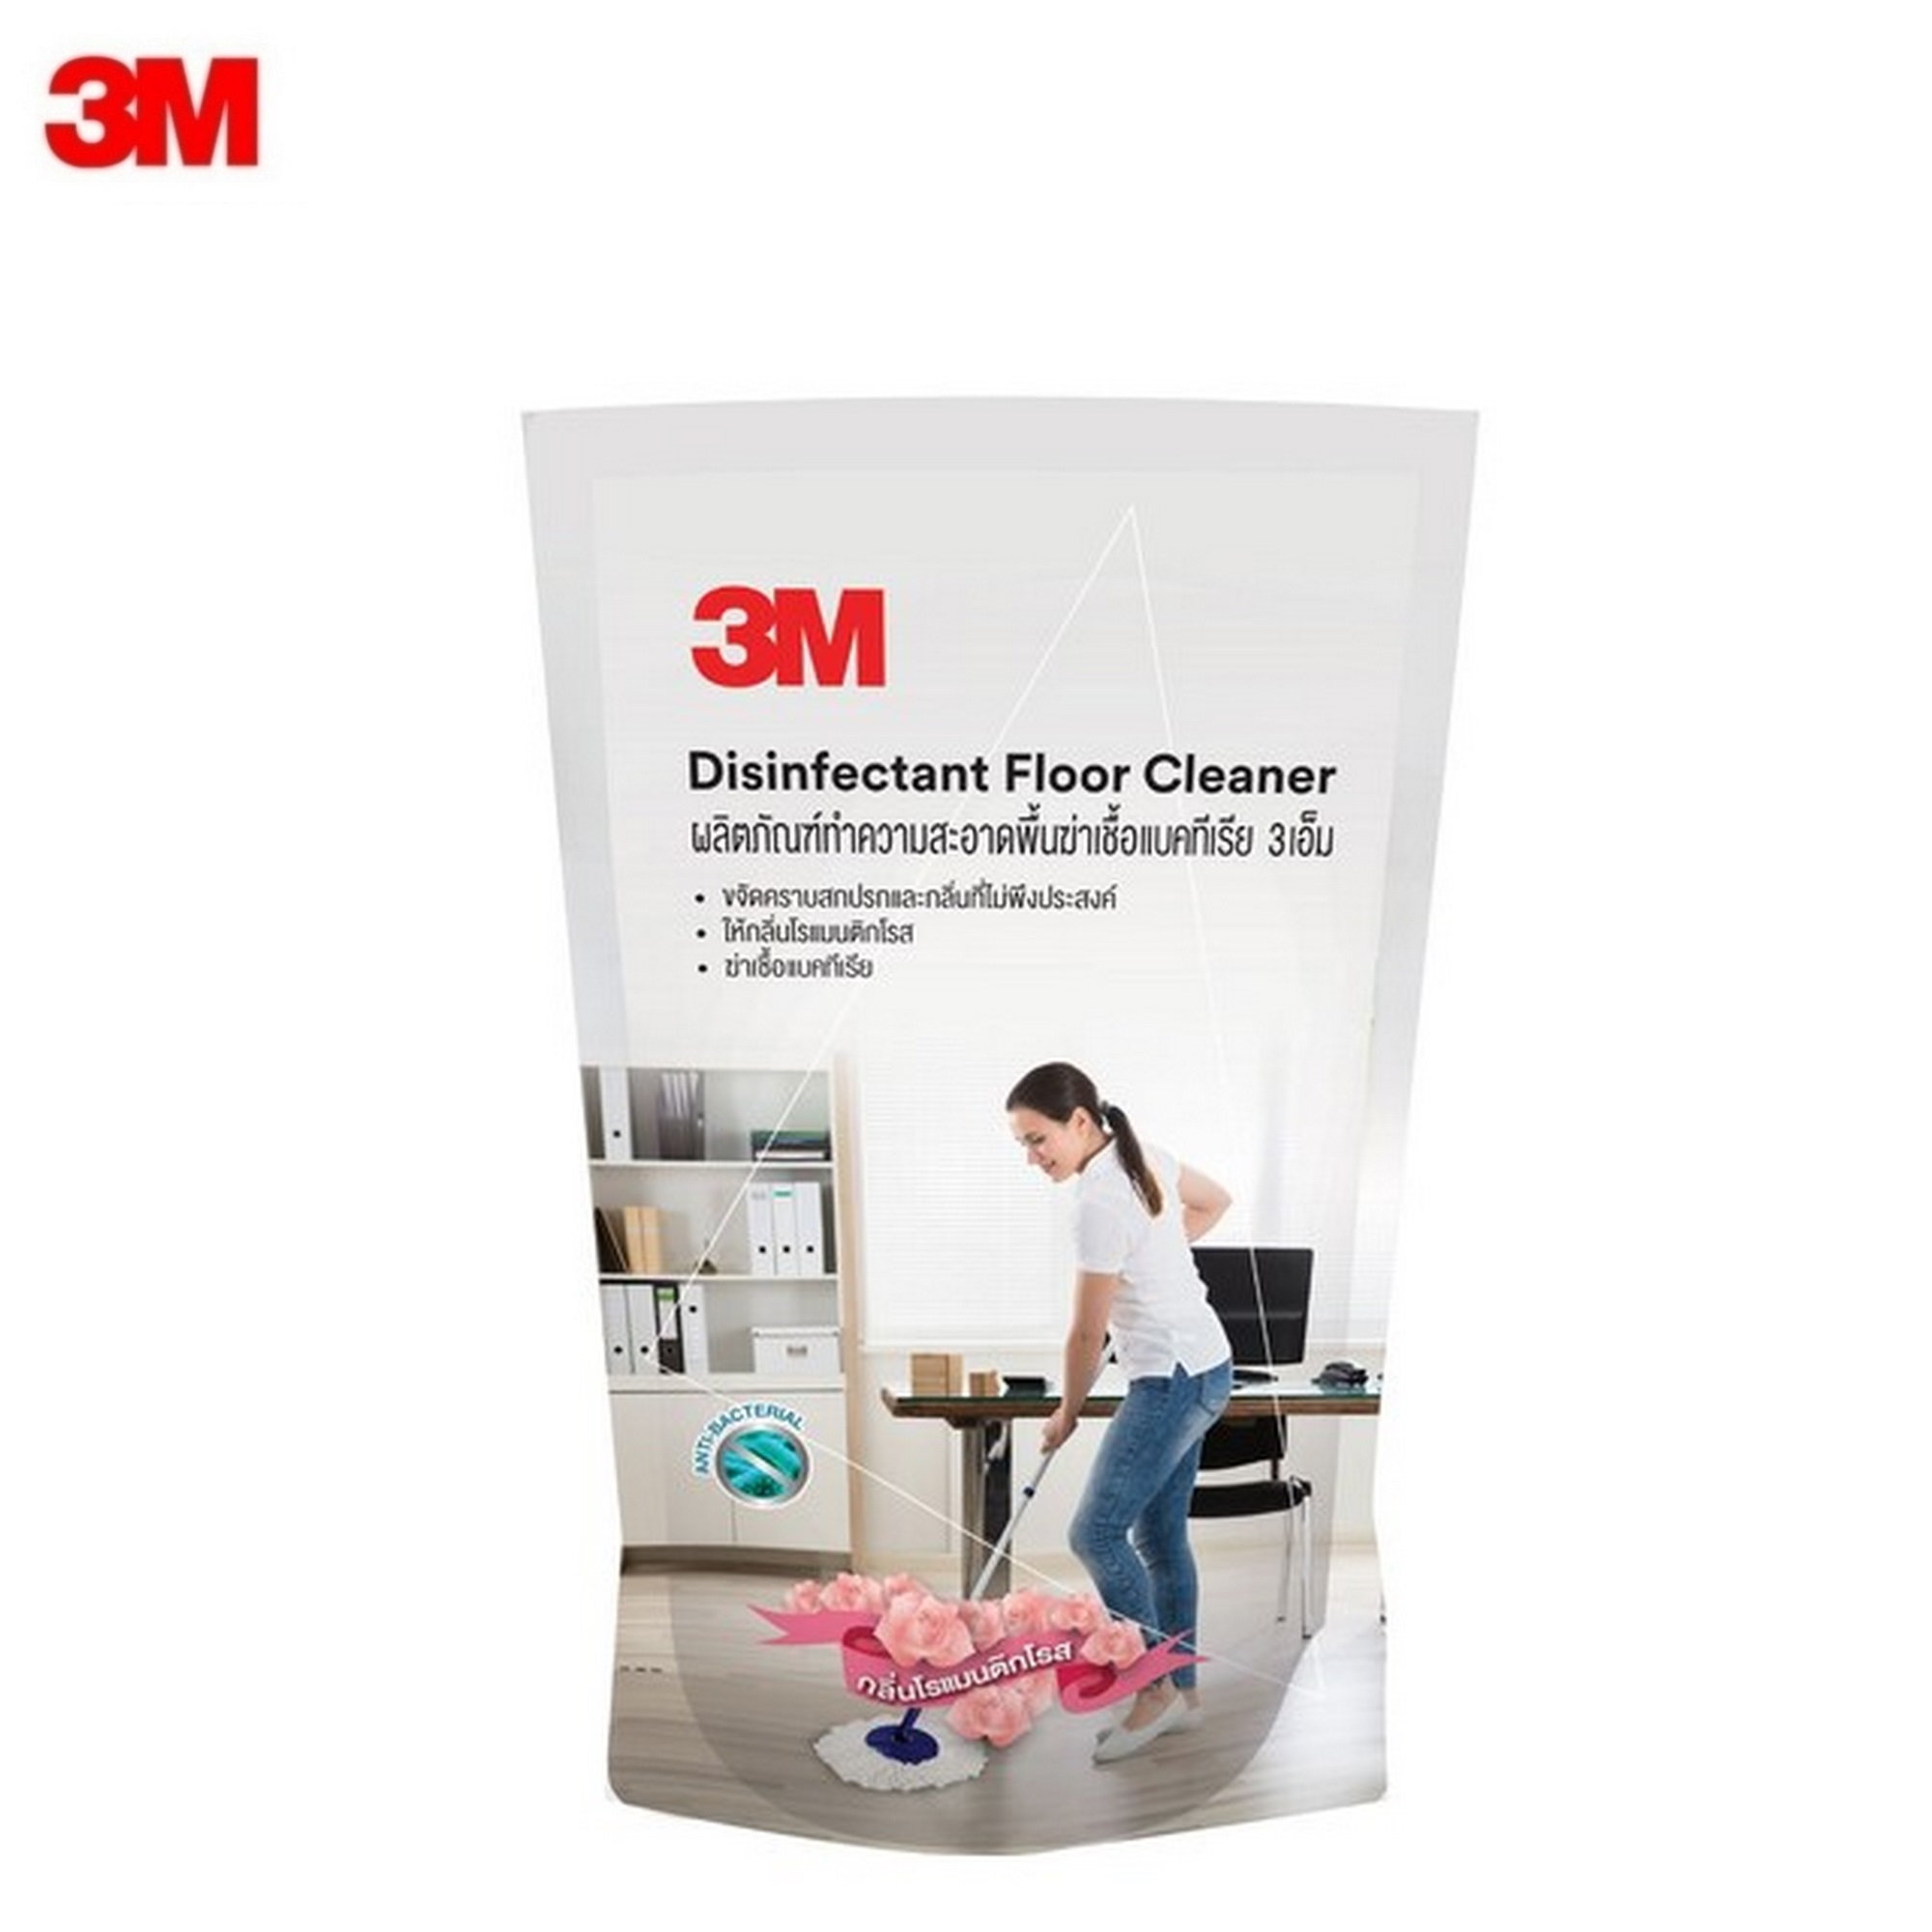 3M น้ำยาถูพื้น น้ำยาทำความสะอาดพื้นฆ่าเชื้อแบคทีเรีย กลิ่นโรแมนติกโรส ชนิดถุงเติม 450ml.